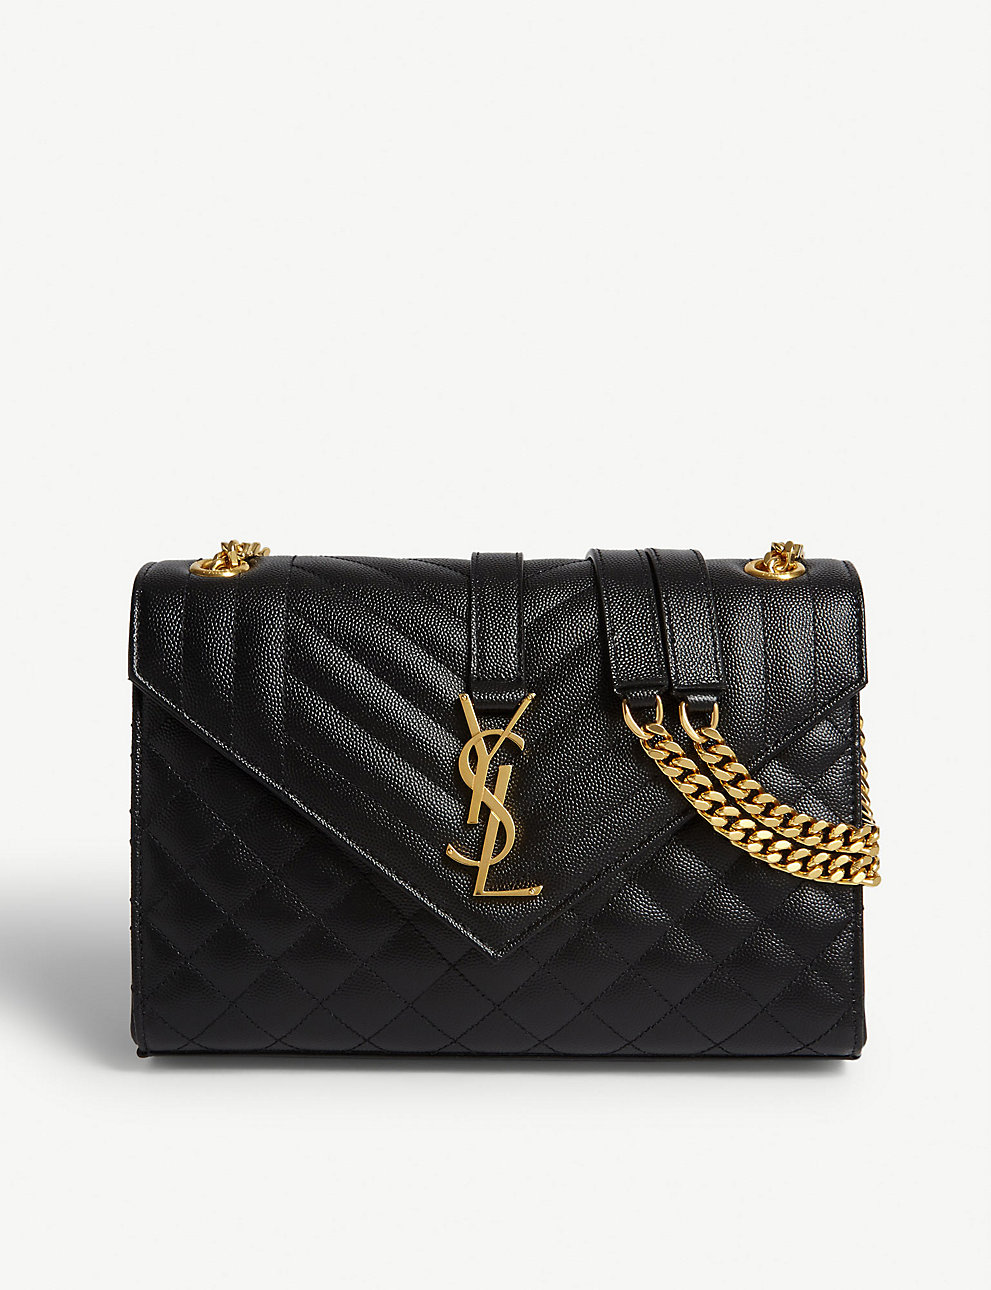 saint laurent bolso satchel de cuero acolchado monograma negro oro – Tienda de bolsos Yves Saint Laurent de calidad